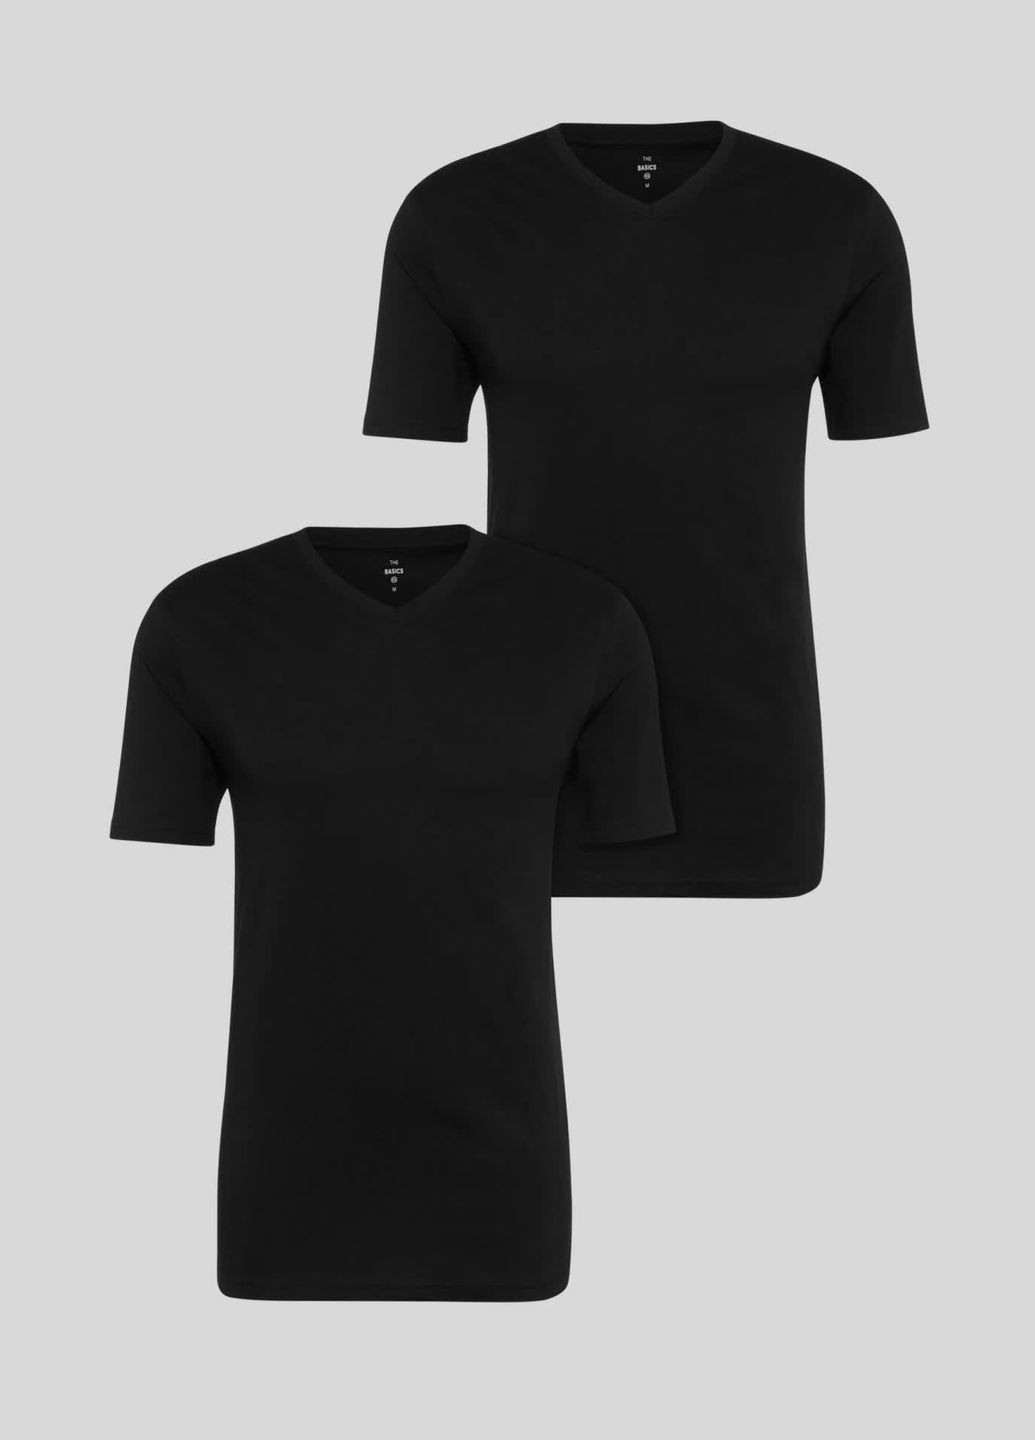 Черная комлект футболок из хлопка (2шт) C&A